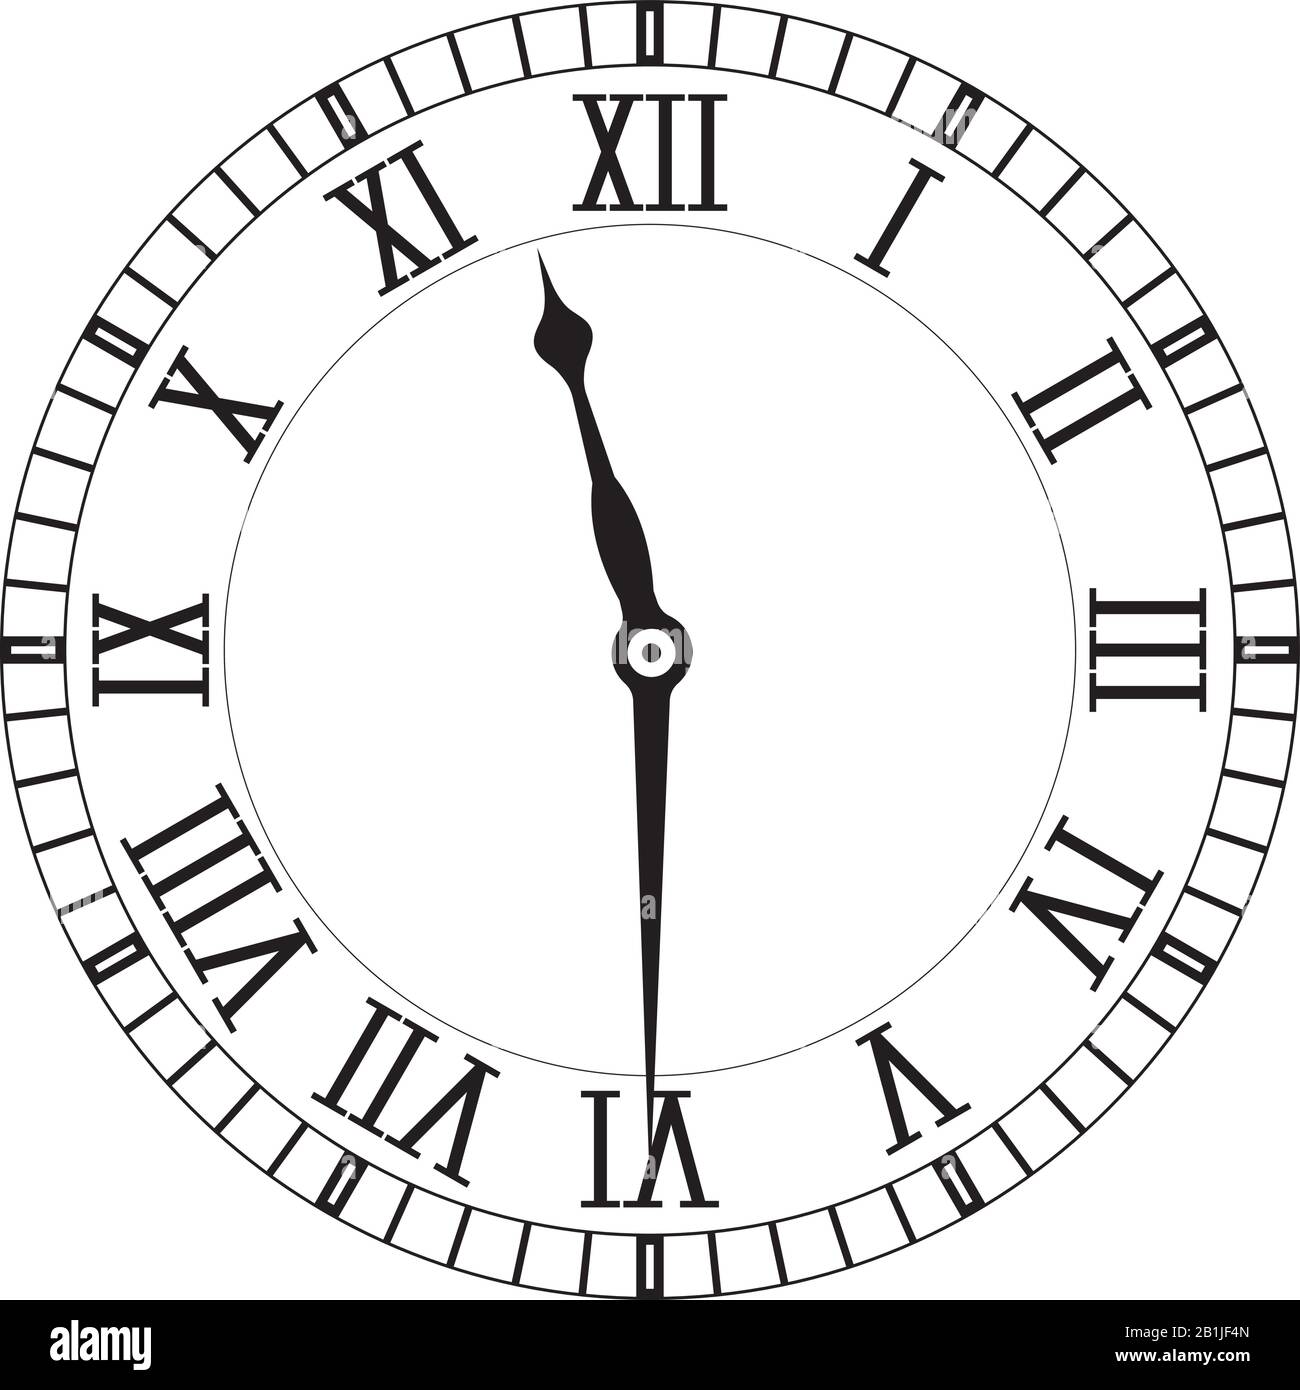 Uhrenfläche mit römischen Ziffern Stock Vektor